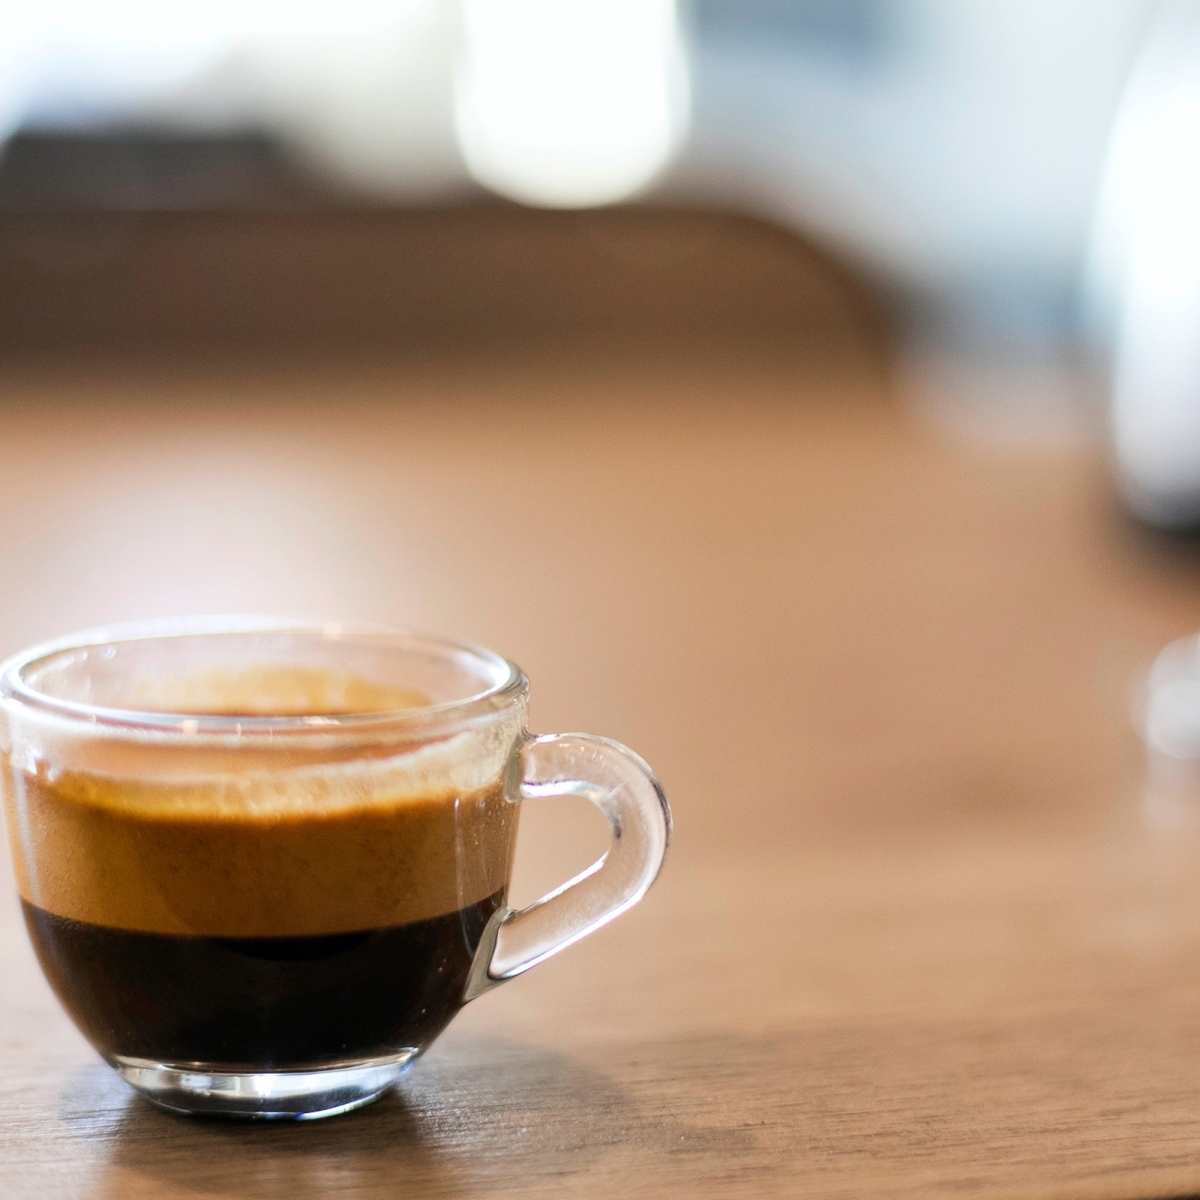 Γιατί ο espresso είναι τόσο διαφορετικός και ξεχωριστός από τα υπόλοιπα είδη καφέ